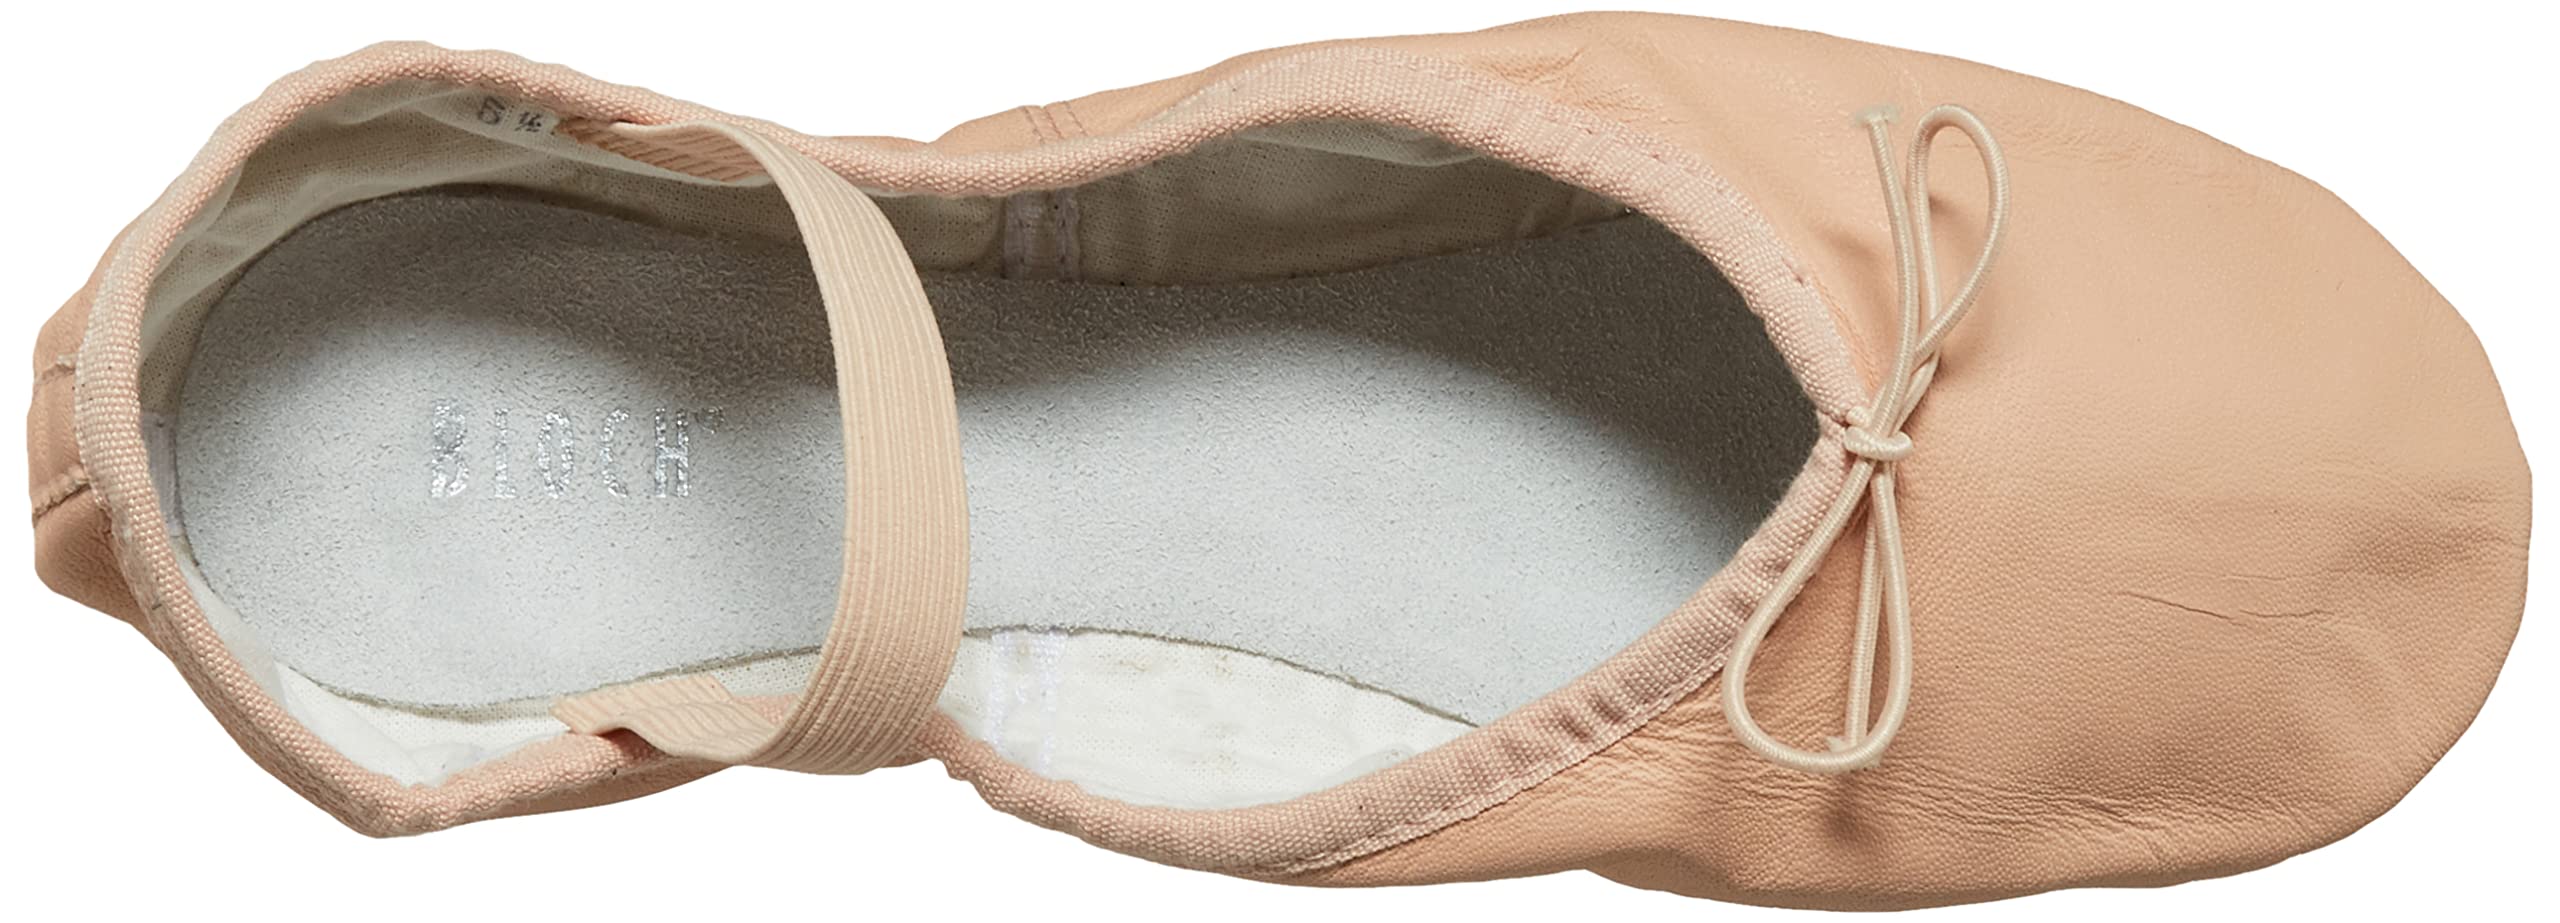 Bloch Women's Dansoft Full Sole Leather Ballet Slipper/Shoe Dance